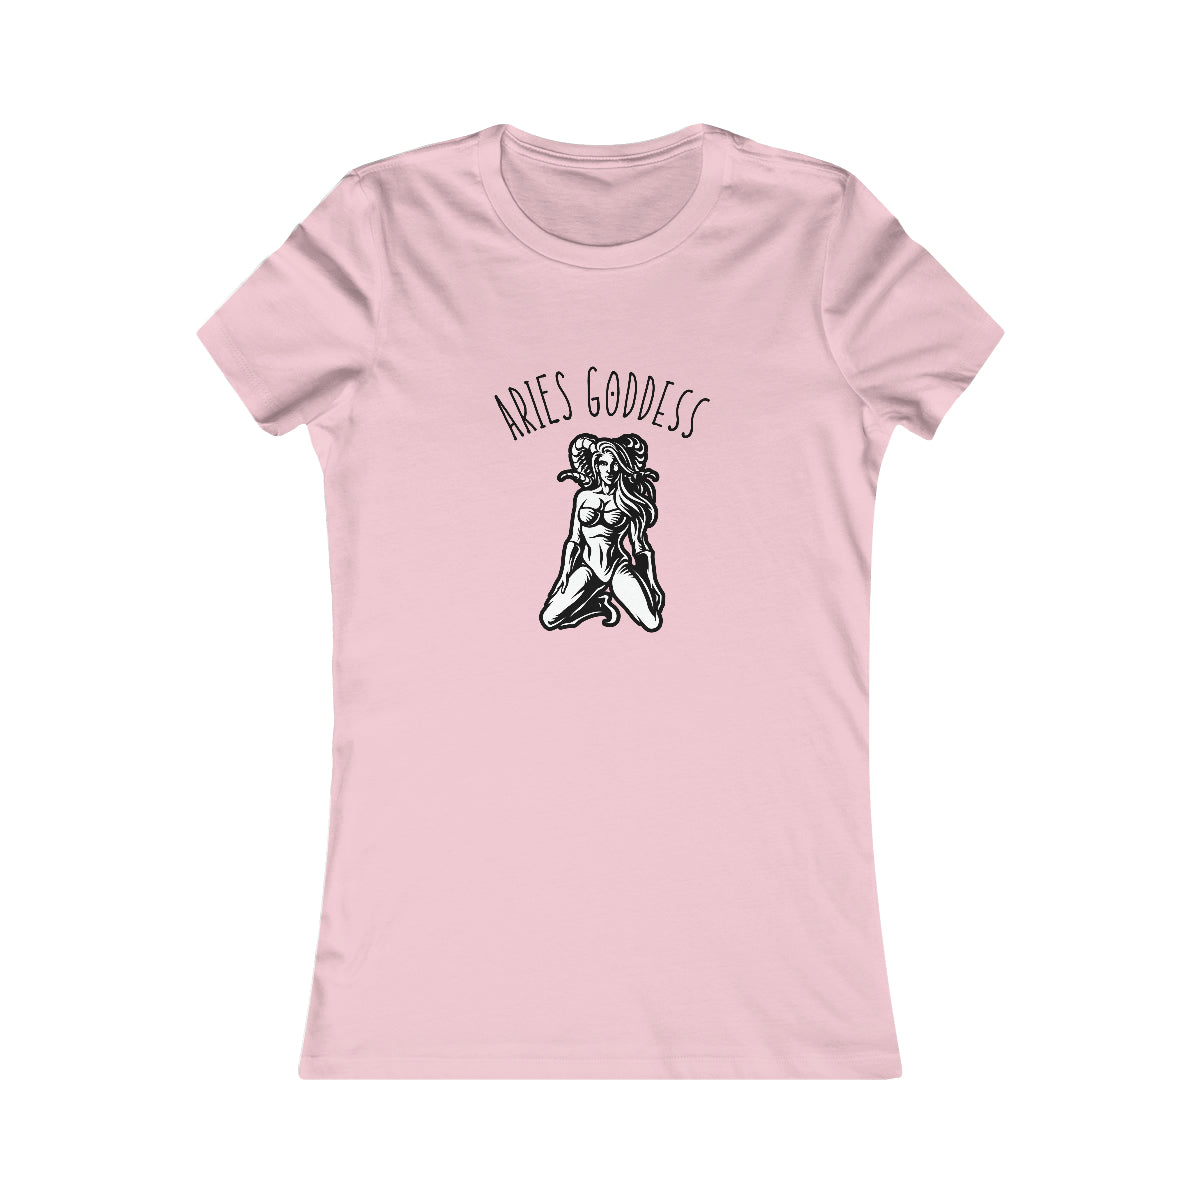 Aries Zodiac Astrology T-Shirt Pink Tee